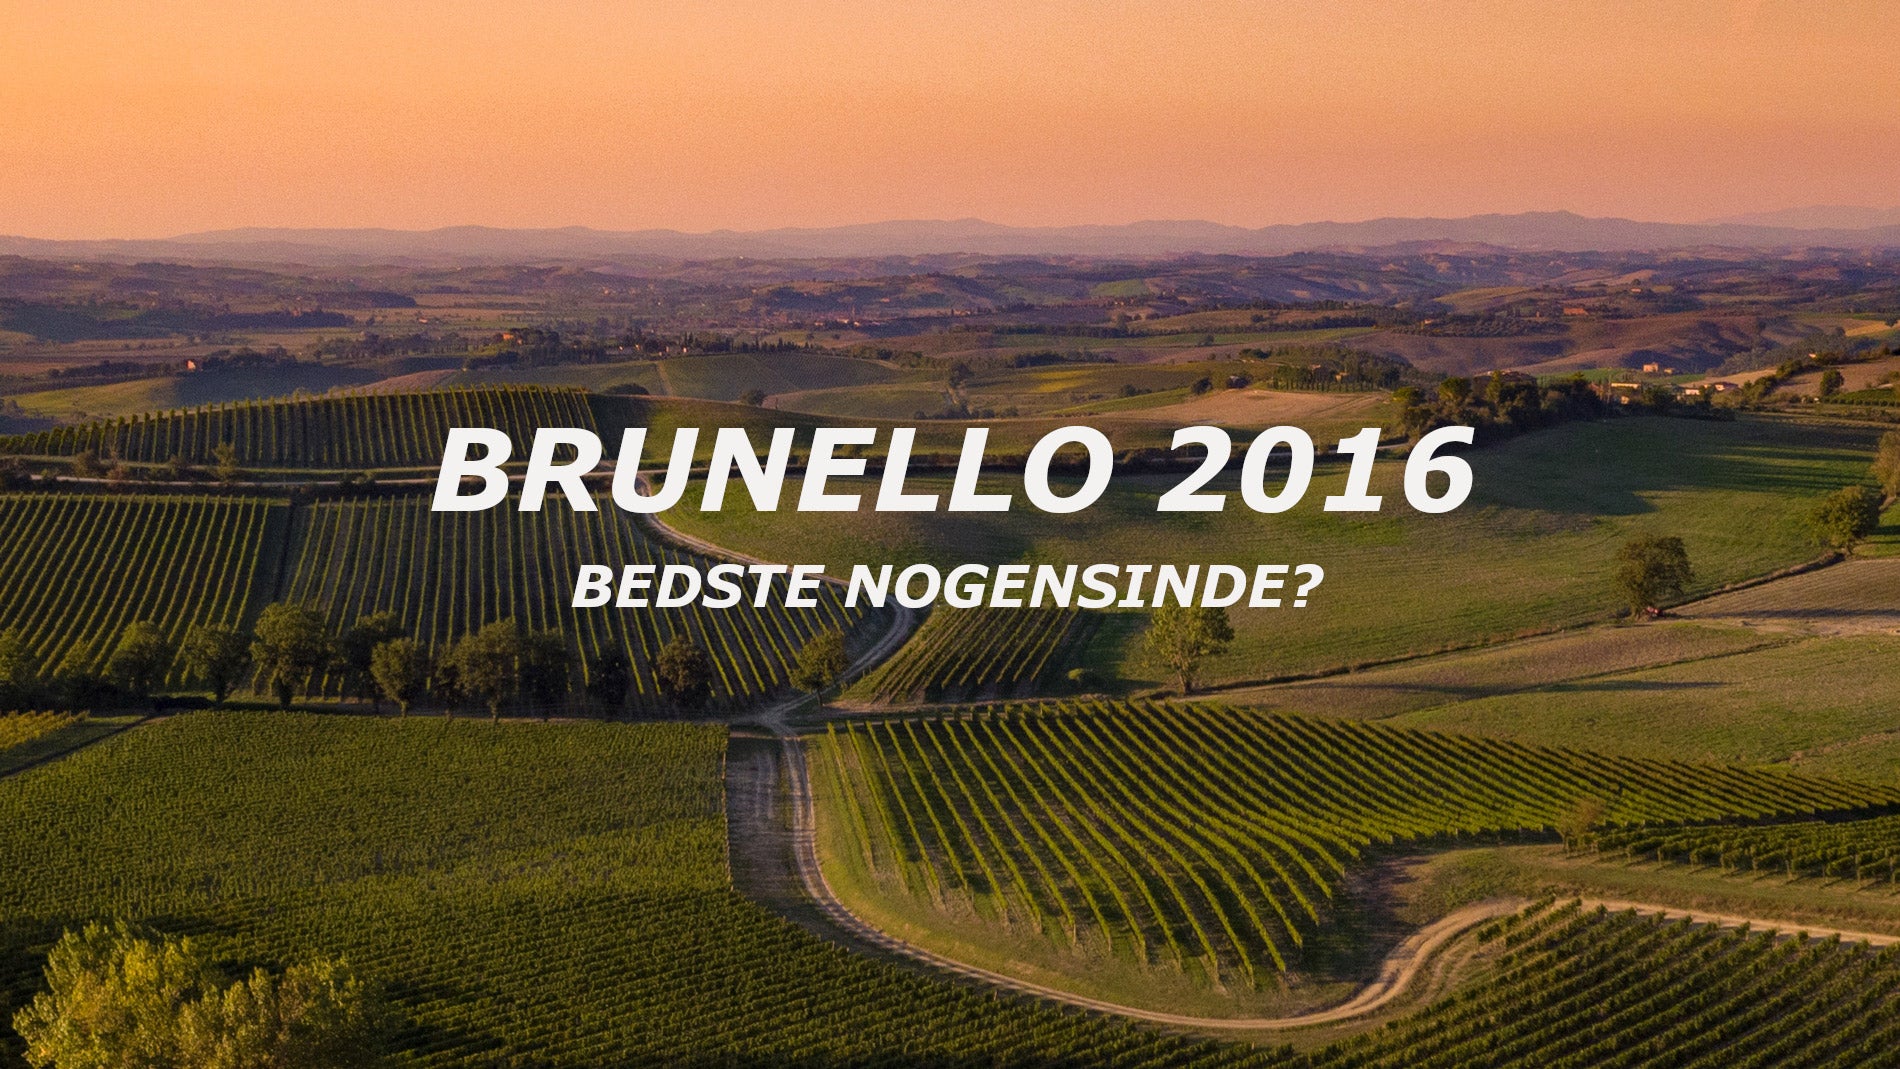 Brunello 2016 - bedste årgang nogensinde?